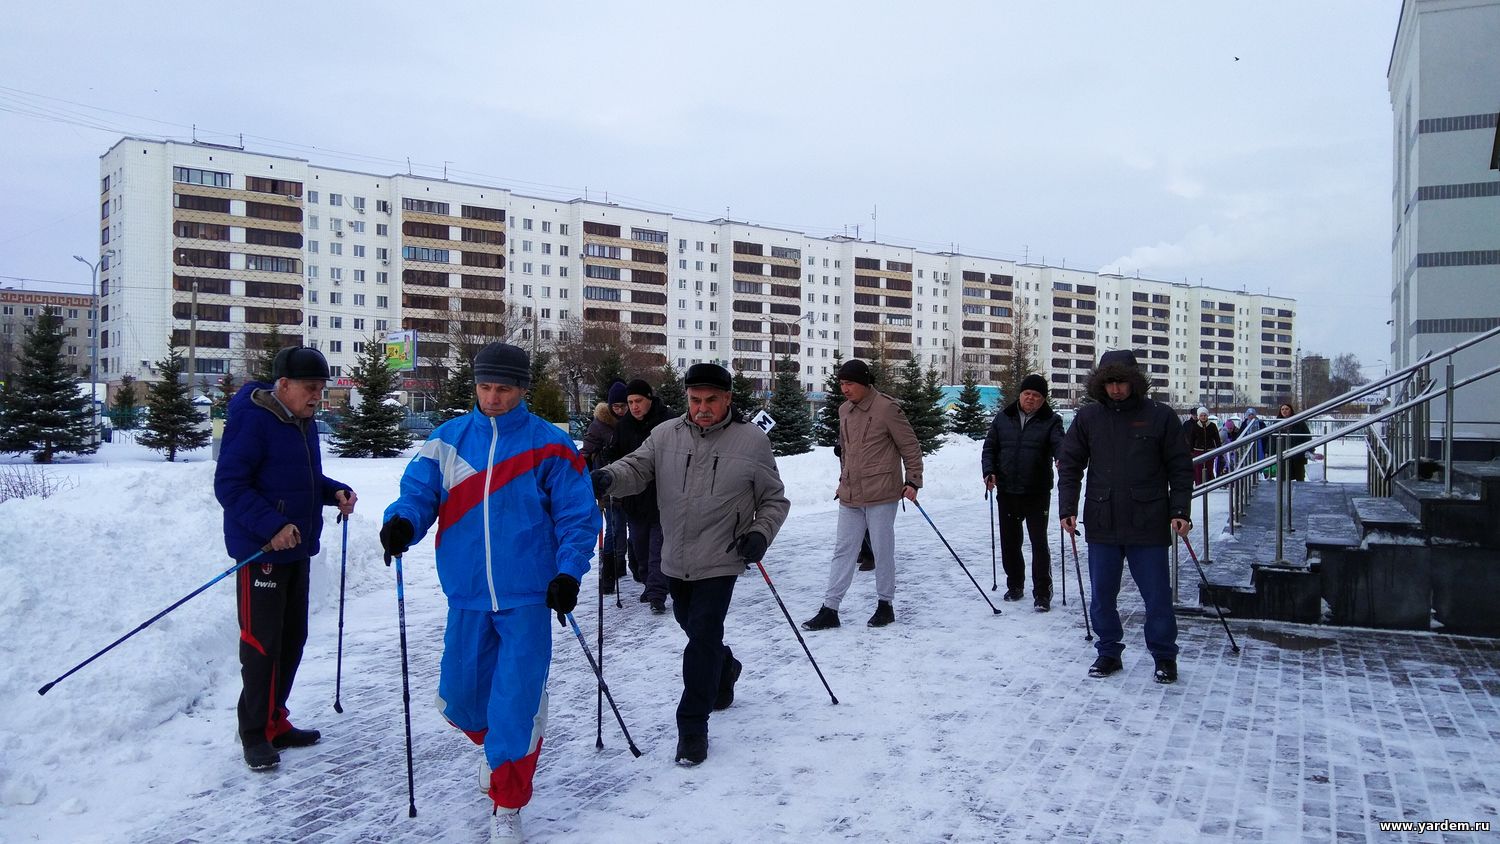 Незрячие и слабовидящие курсанты фонда «Ярдэм» вышли на скандинавскую ходьбу ⠀. Общие новости